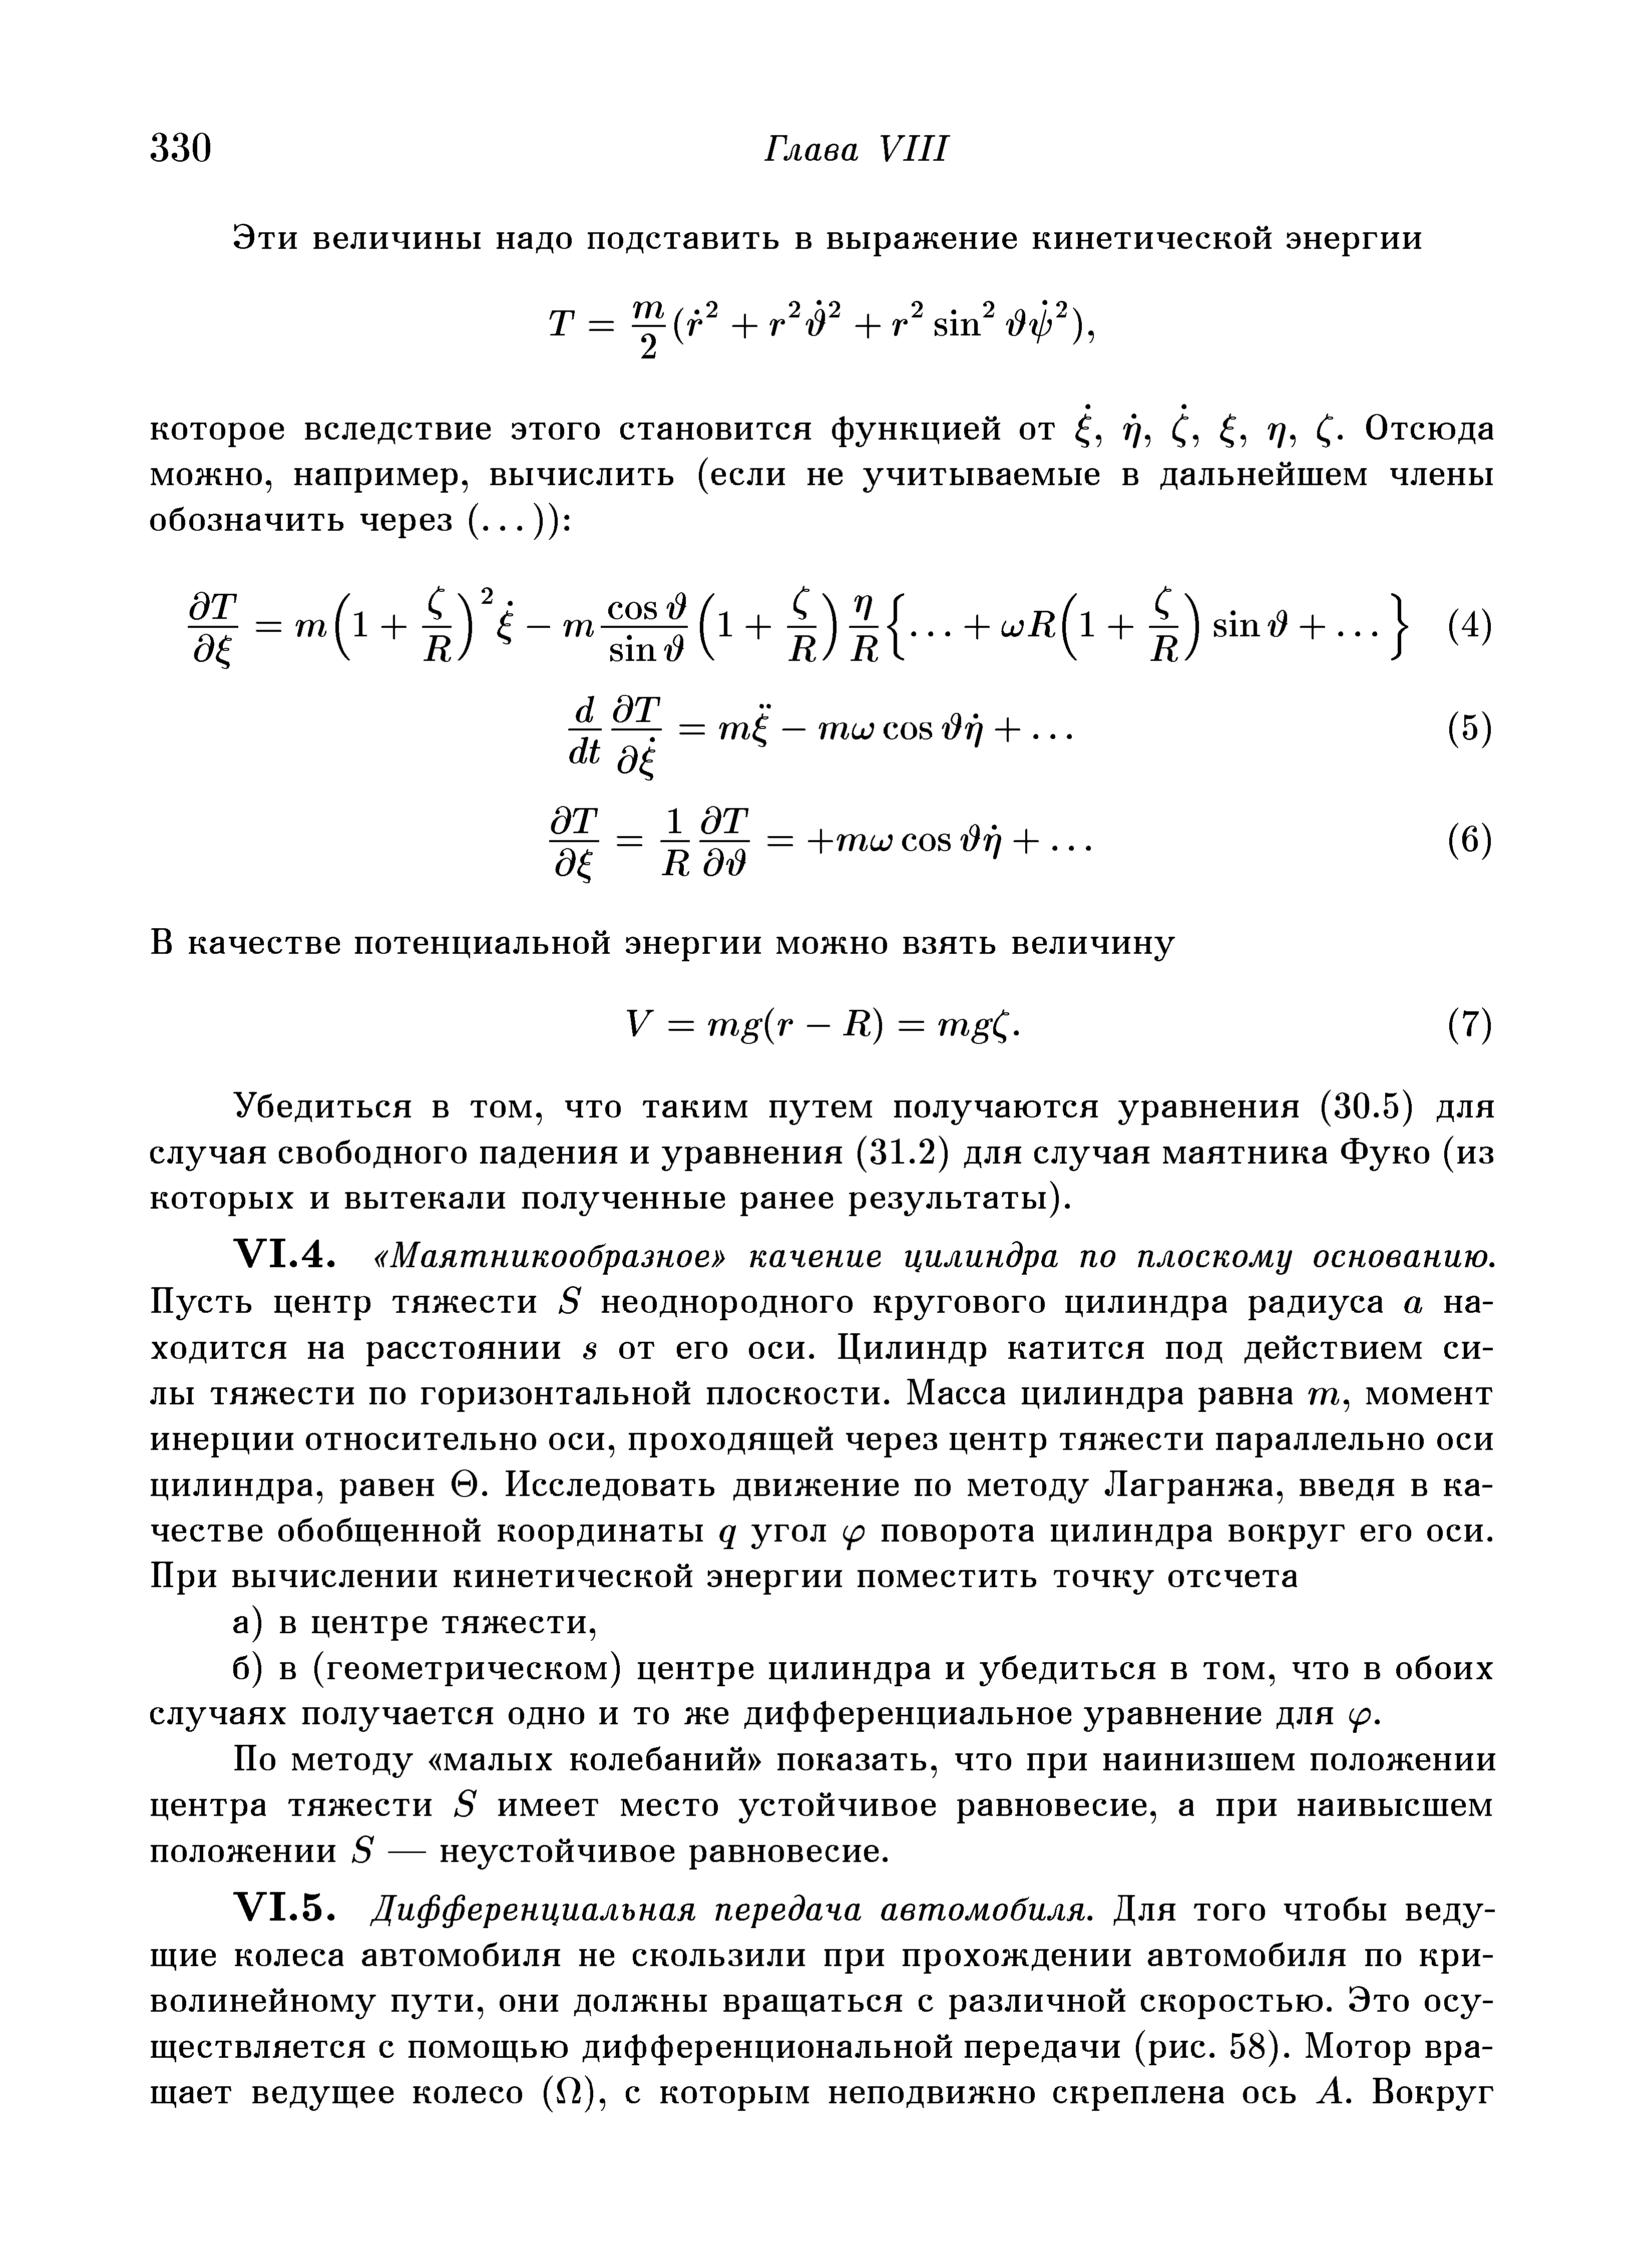 Убедиться в том, что таким путем получаются уравнения (30.5) для случая свободного падения и уравнения (31.2) для случая маятника Фуко (из которых и вытекали полученные ранее результаты).
